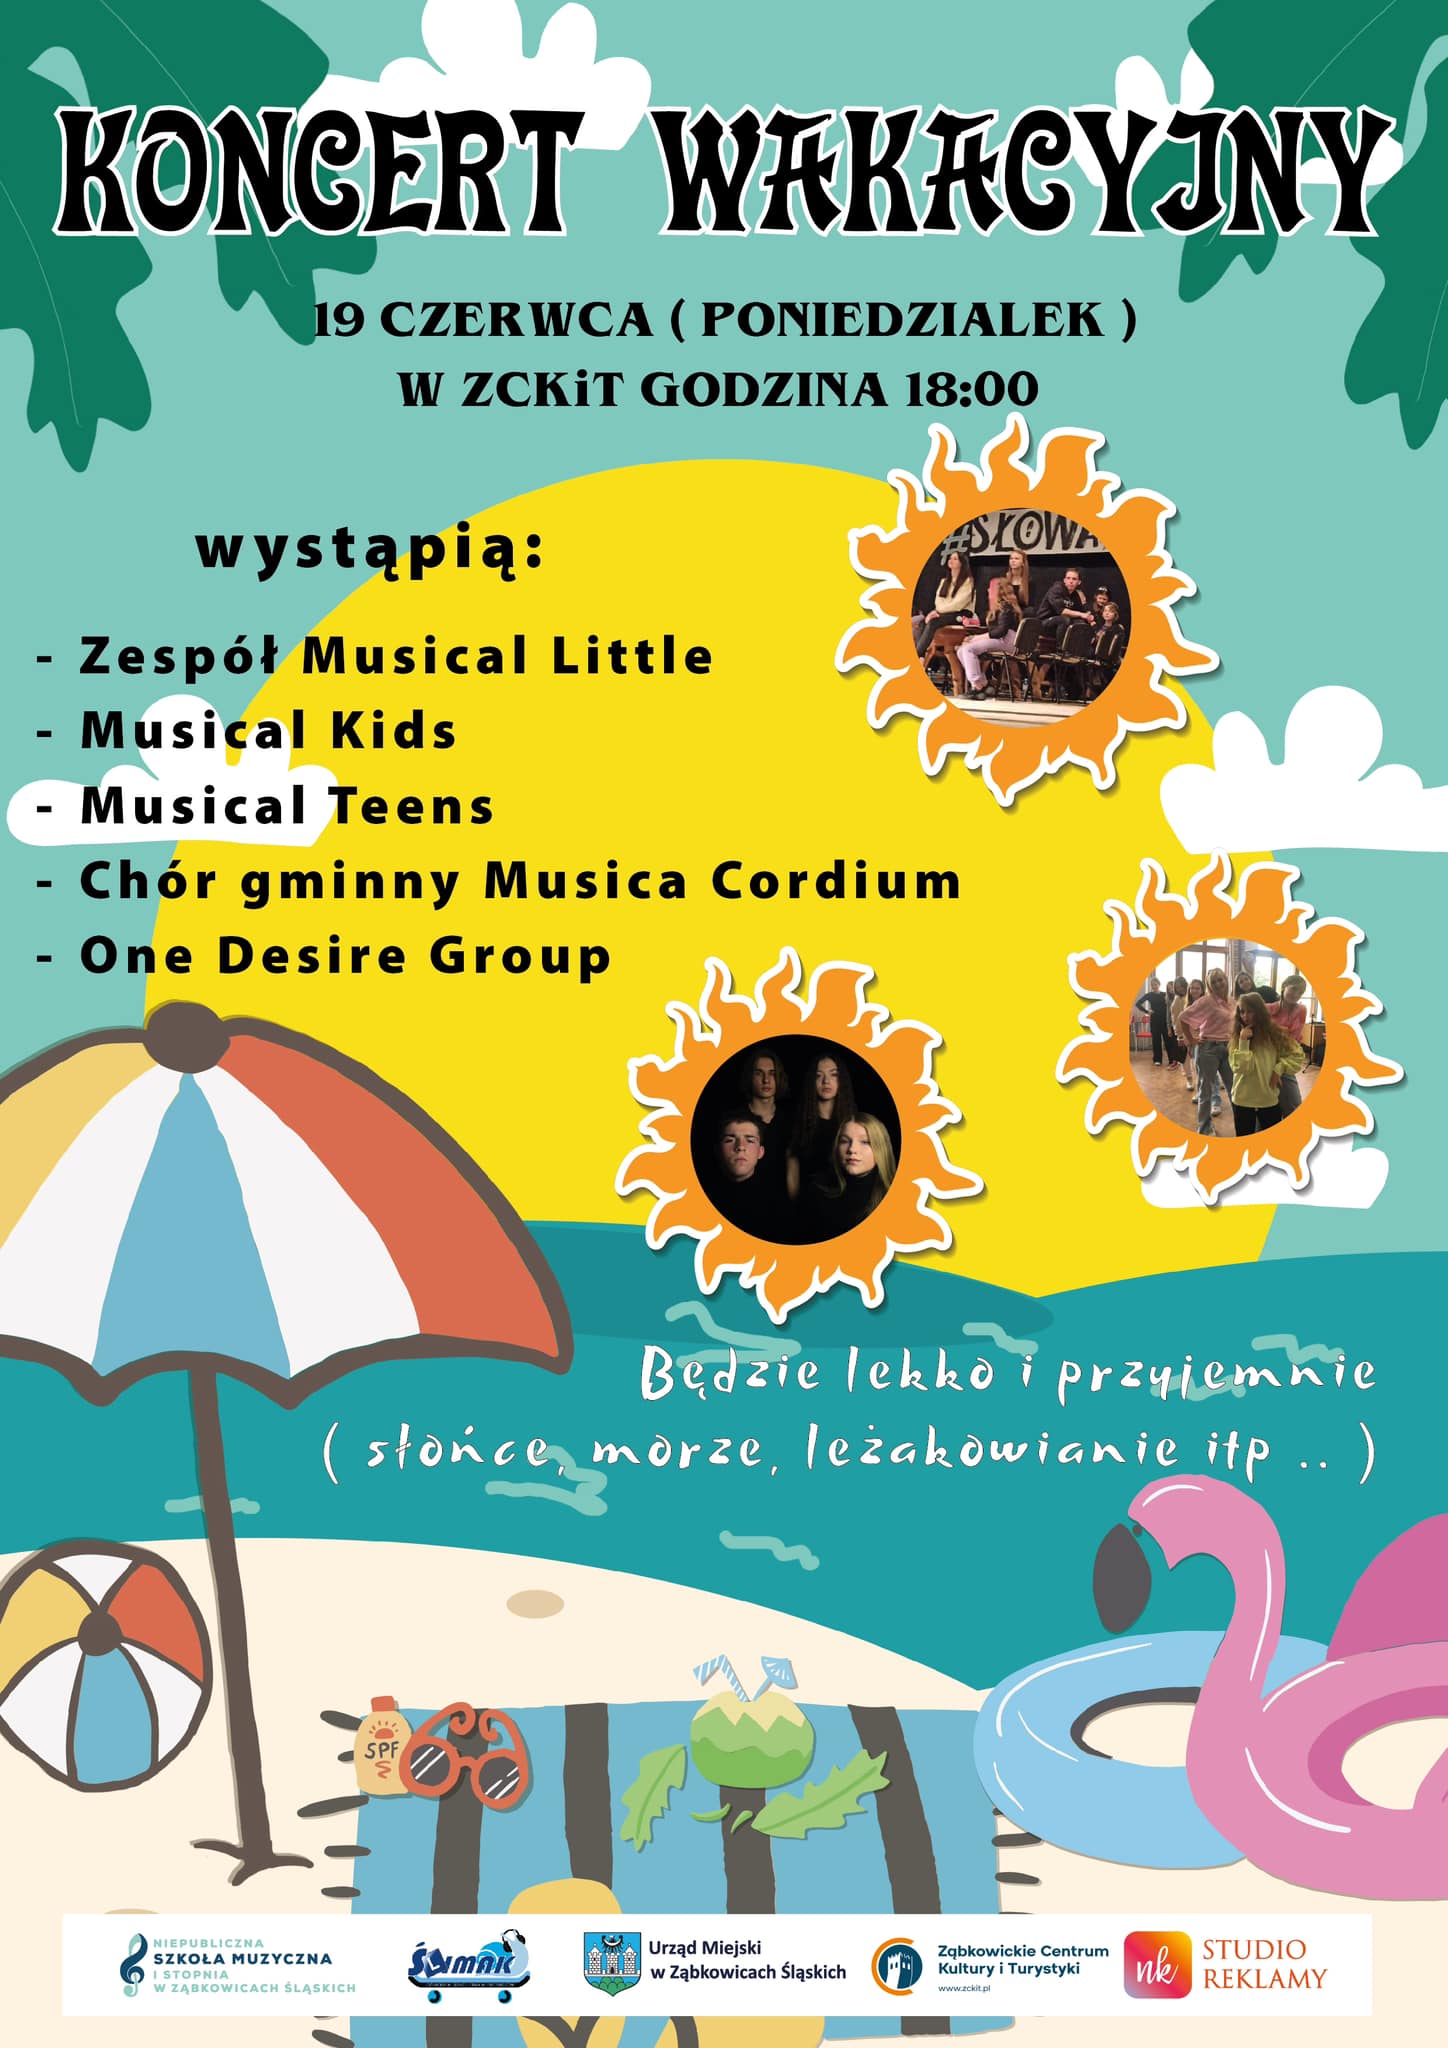 Plakat informacyjny o koncercie wakacyjnym 19 czerwca 2023 o godzinie 18:00 w Ząbkowickim Centrum Kultury i Turystyki.